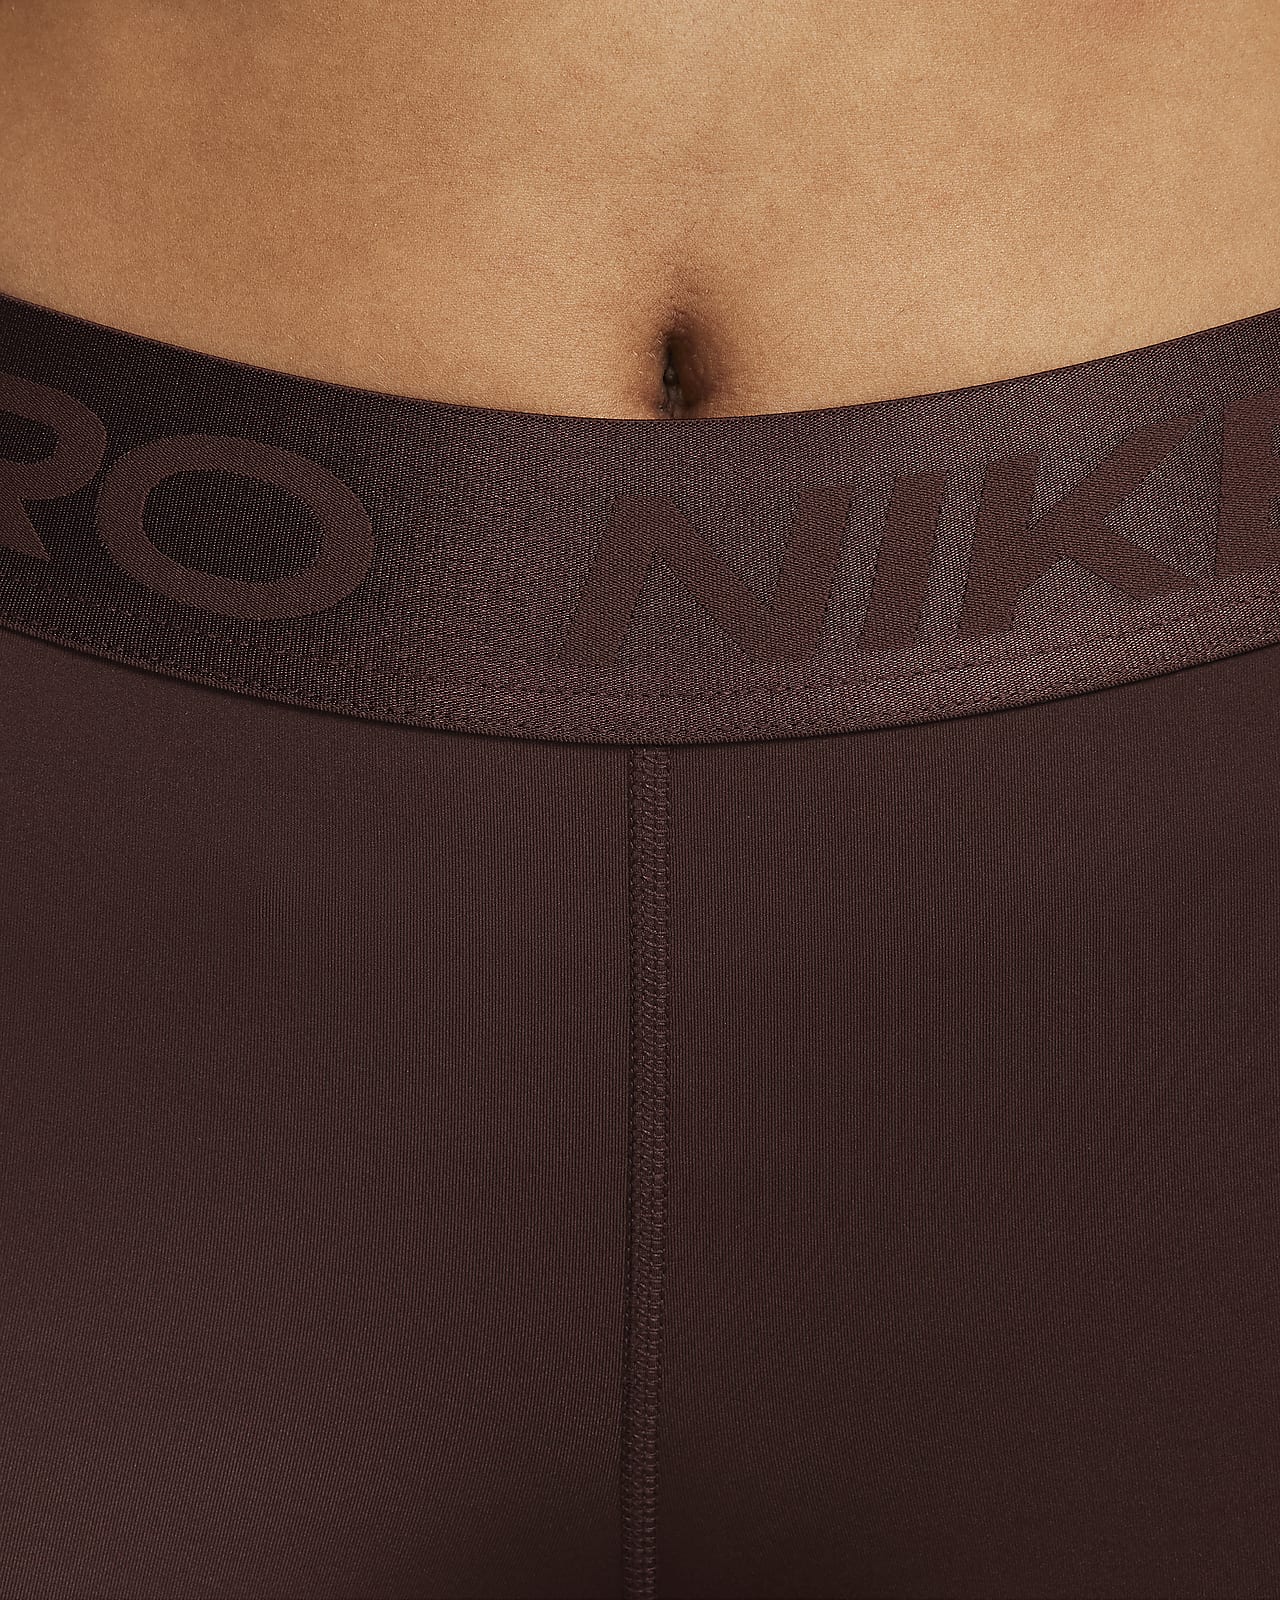 Shorts Nike Pro 365 Feminino - Raiana Shop